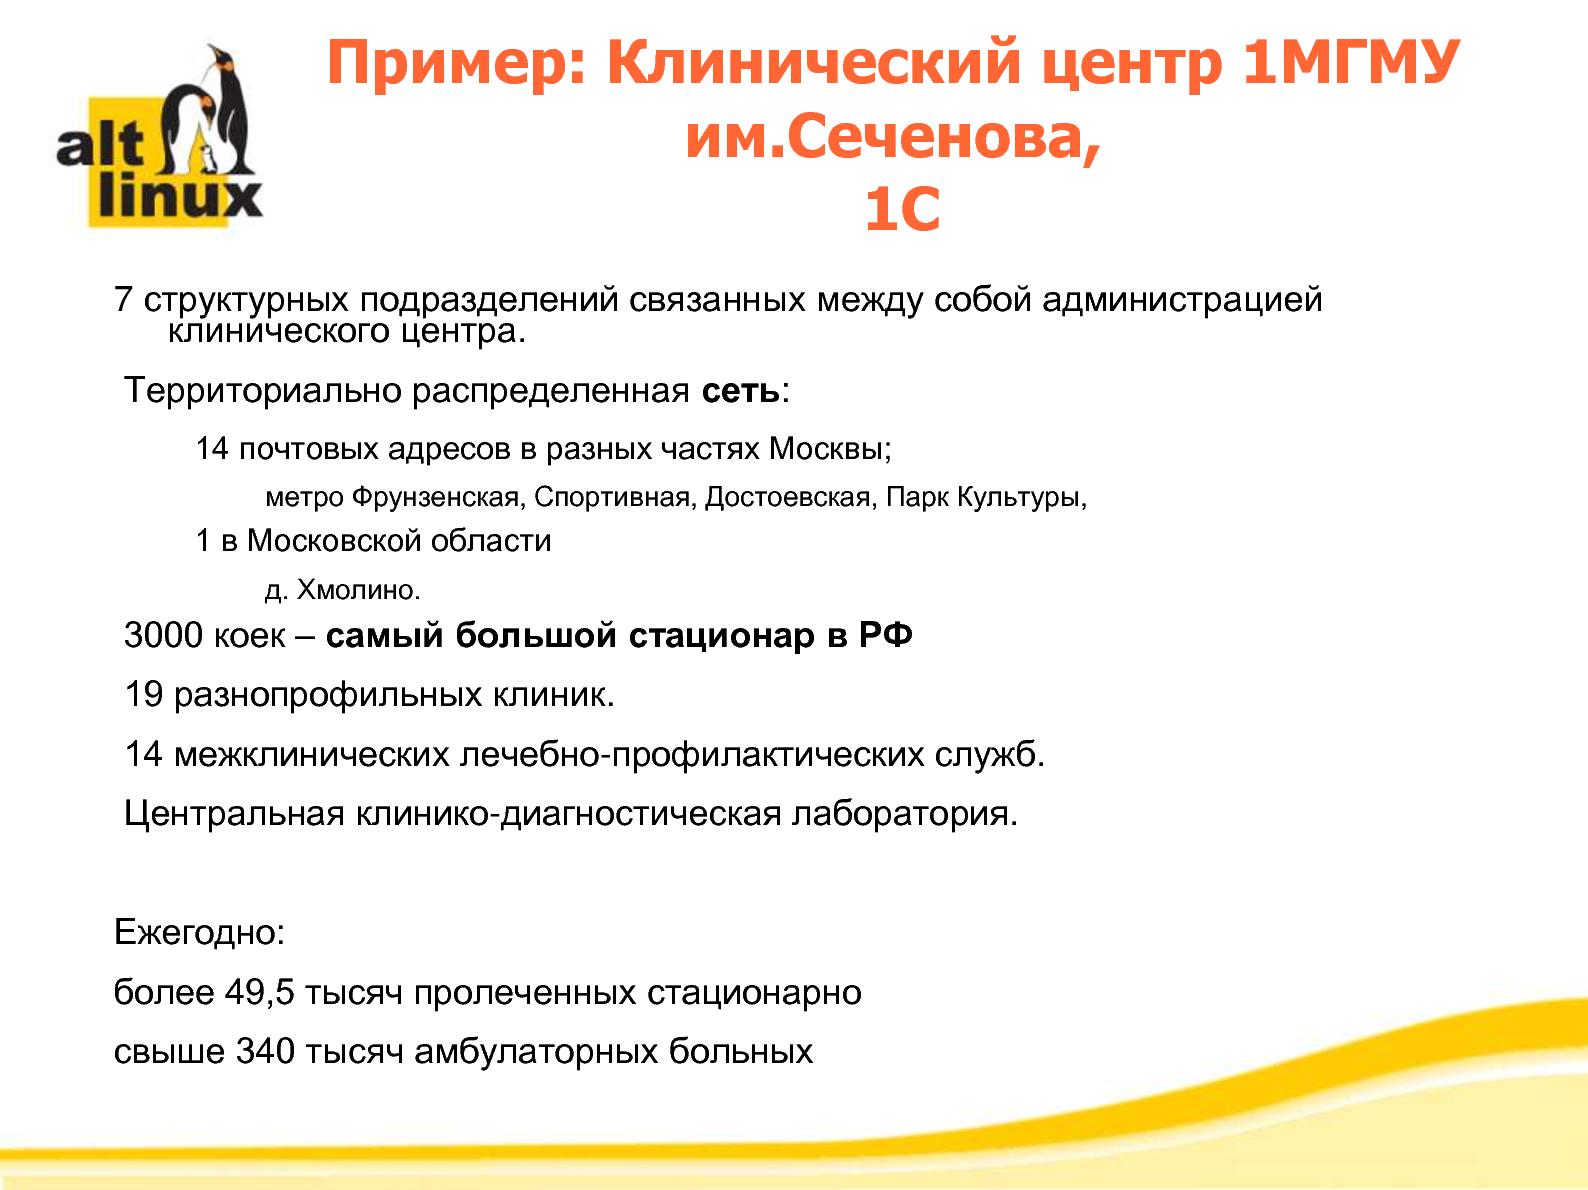 Файл:Разработка и внедрение программной платформы ALT Linux 6.0 в медицинских учреждениях России (Алексей Новодворский, ROSS-2014).pdf